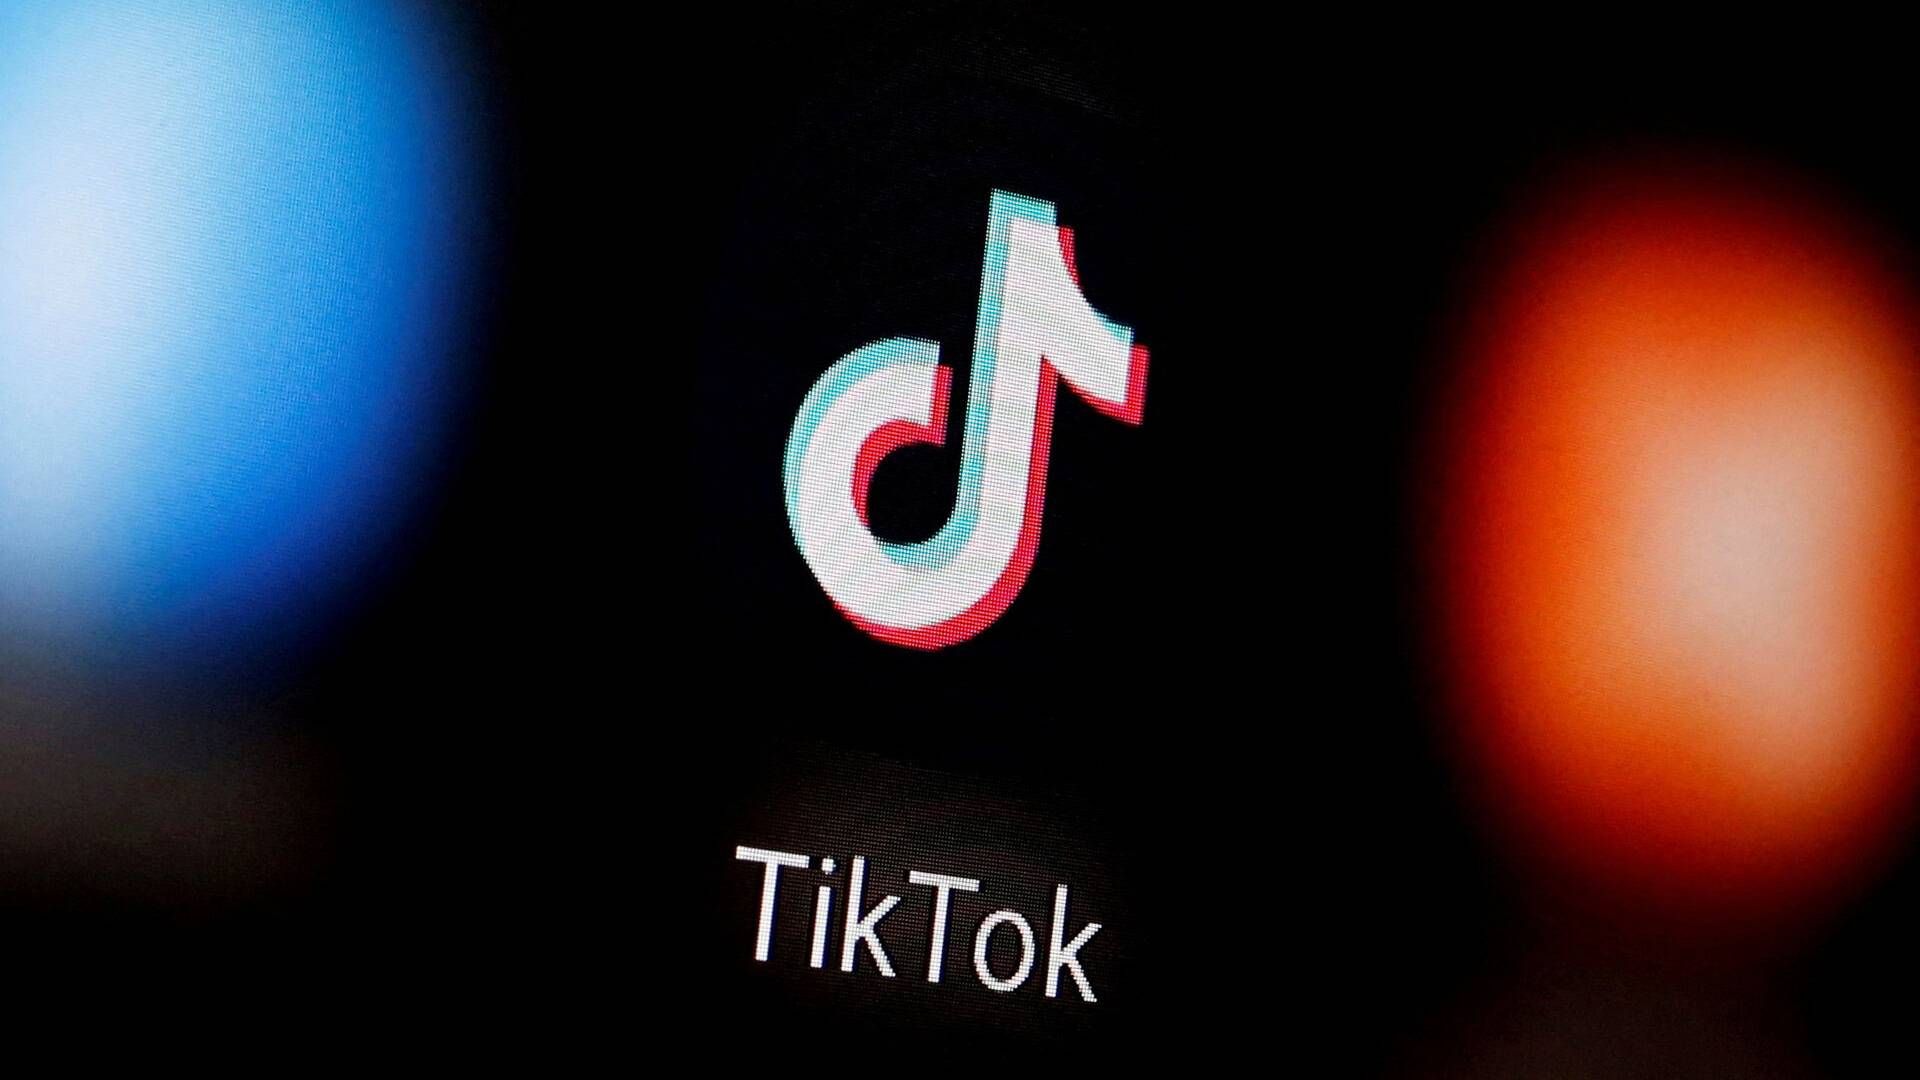 Private virksomheder tager ikke sikkerhedsrisikoen ved TikTok alvorligt nok, mener it-sikkerhedsekspert i IDA. | Foto: Dado Ruvic/reuters/ritzau Scanpix